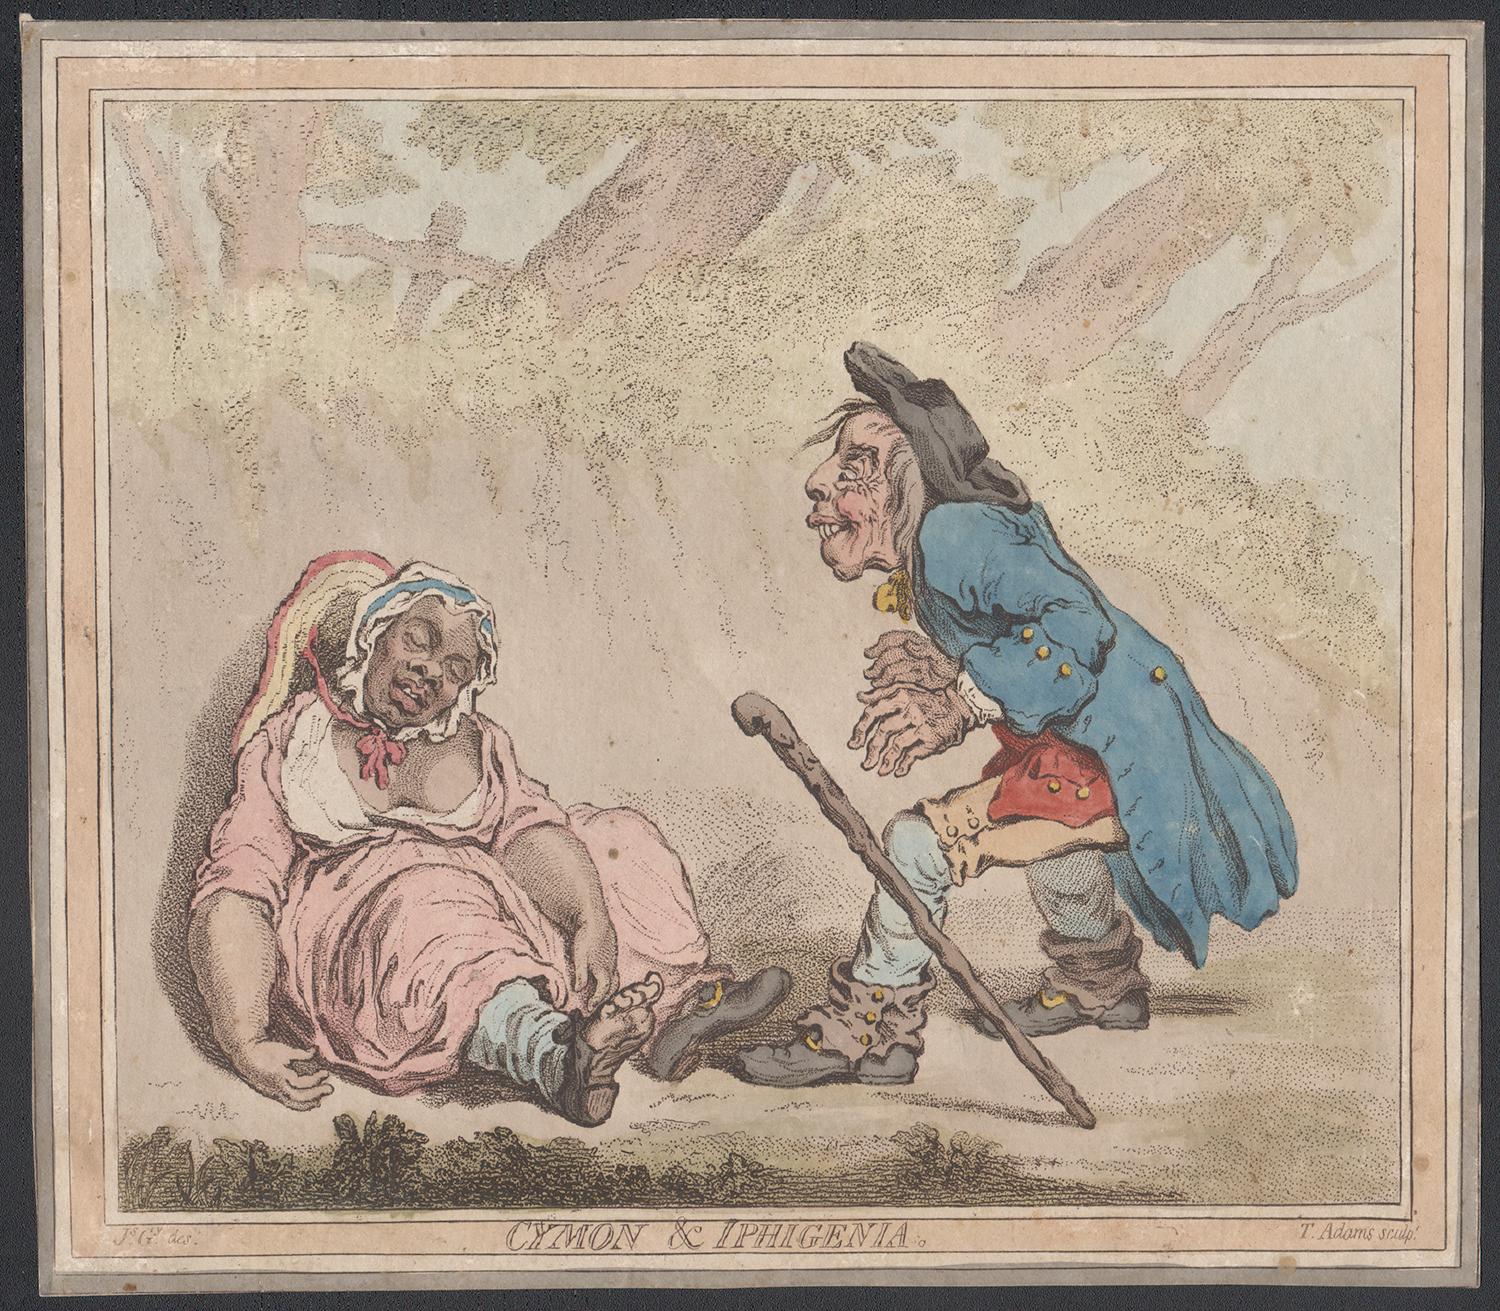 cymon et Iphigénie'

Eau-forte avec coloration manuelle originale par James Gillray, 1796.

Gillray était un important caricaturiste anglais. En 1796, il publie cette caricature de la découverte de Cymon par Iphigénie, tirée de l'adaptation par